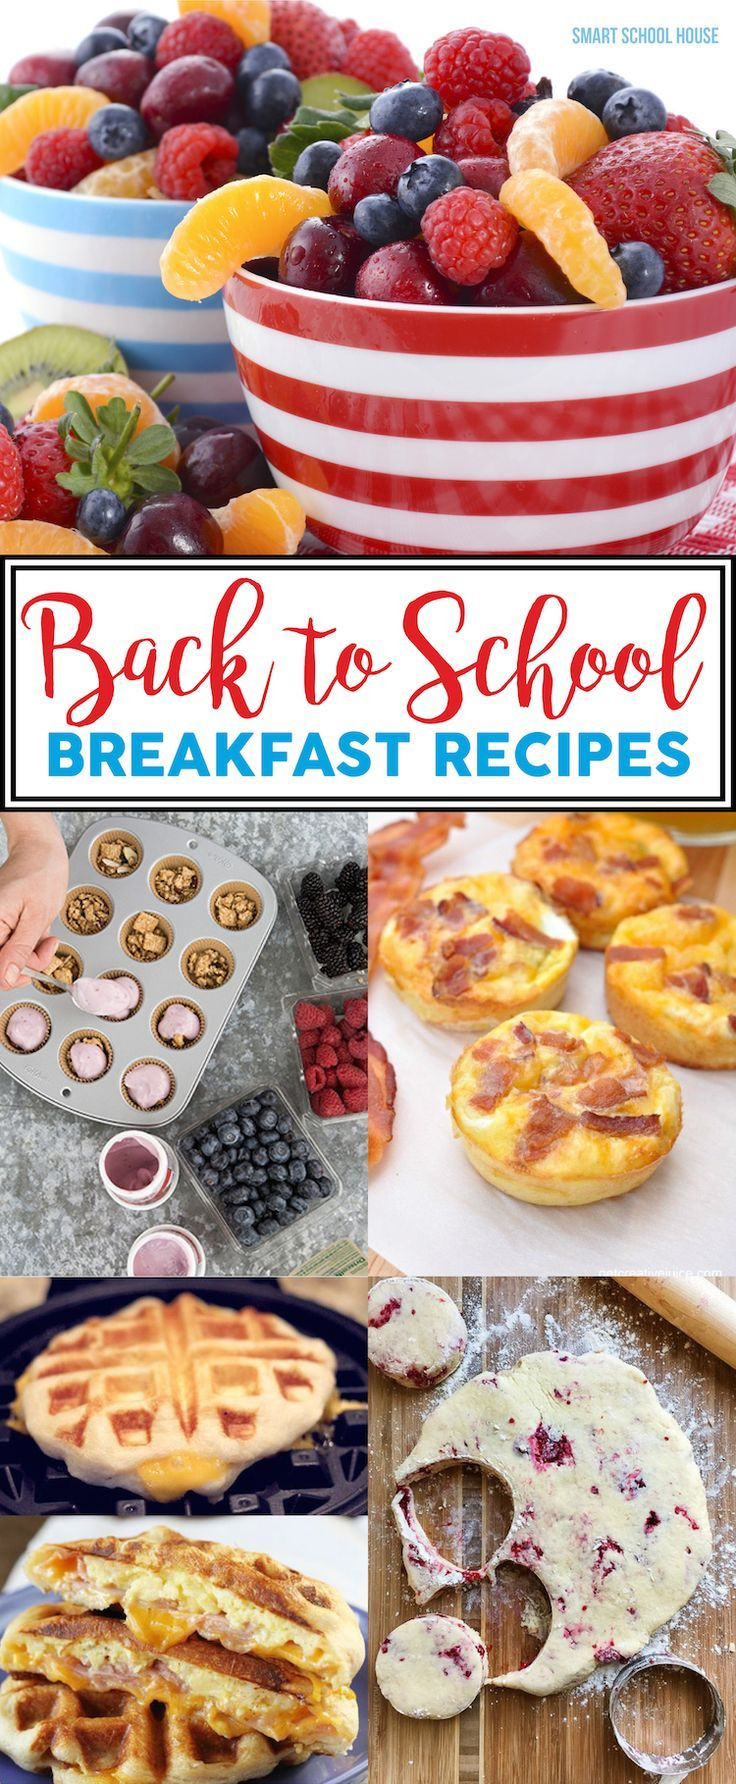 Breakfast Foods For Kids
 Back to School Breakfast Recipes